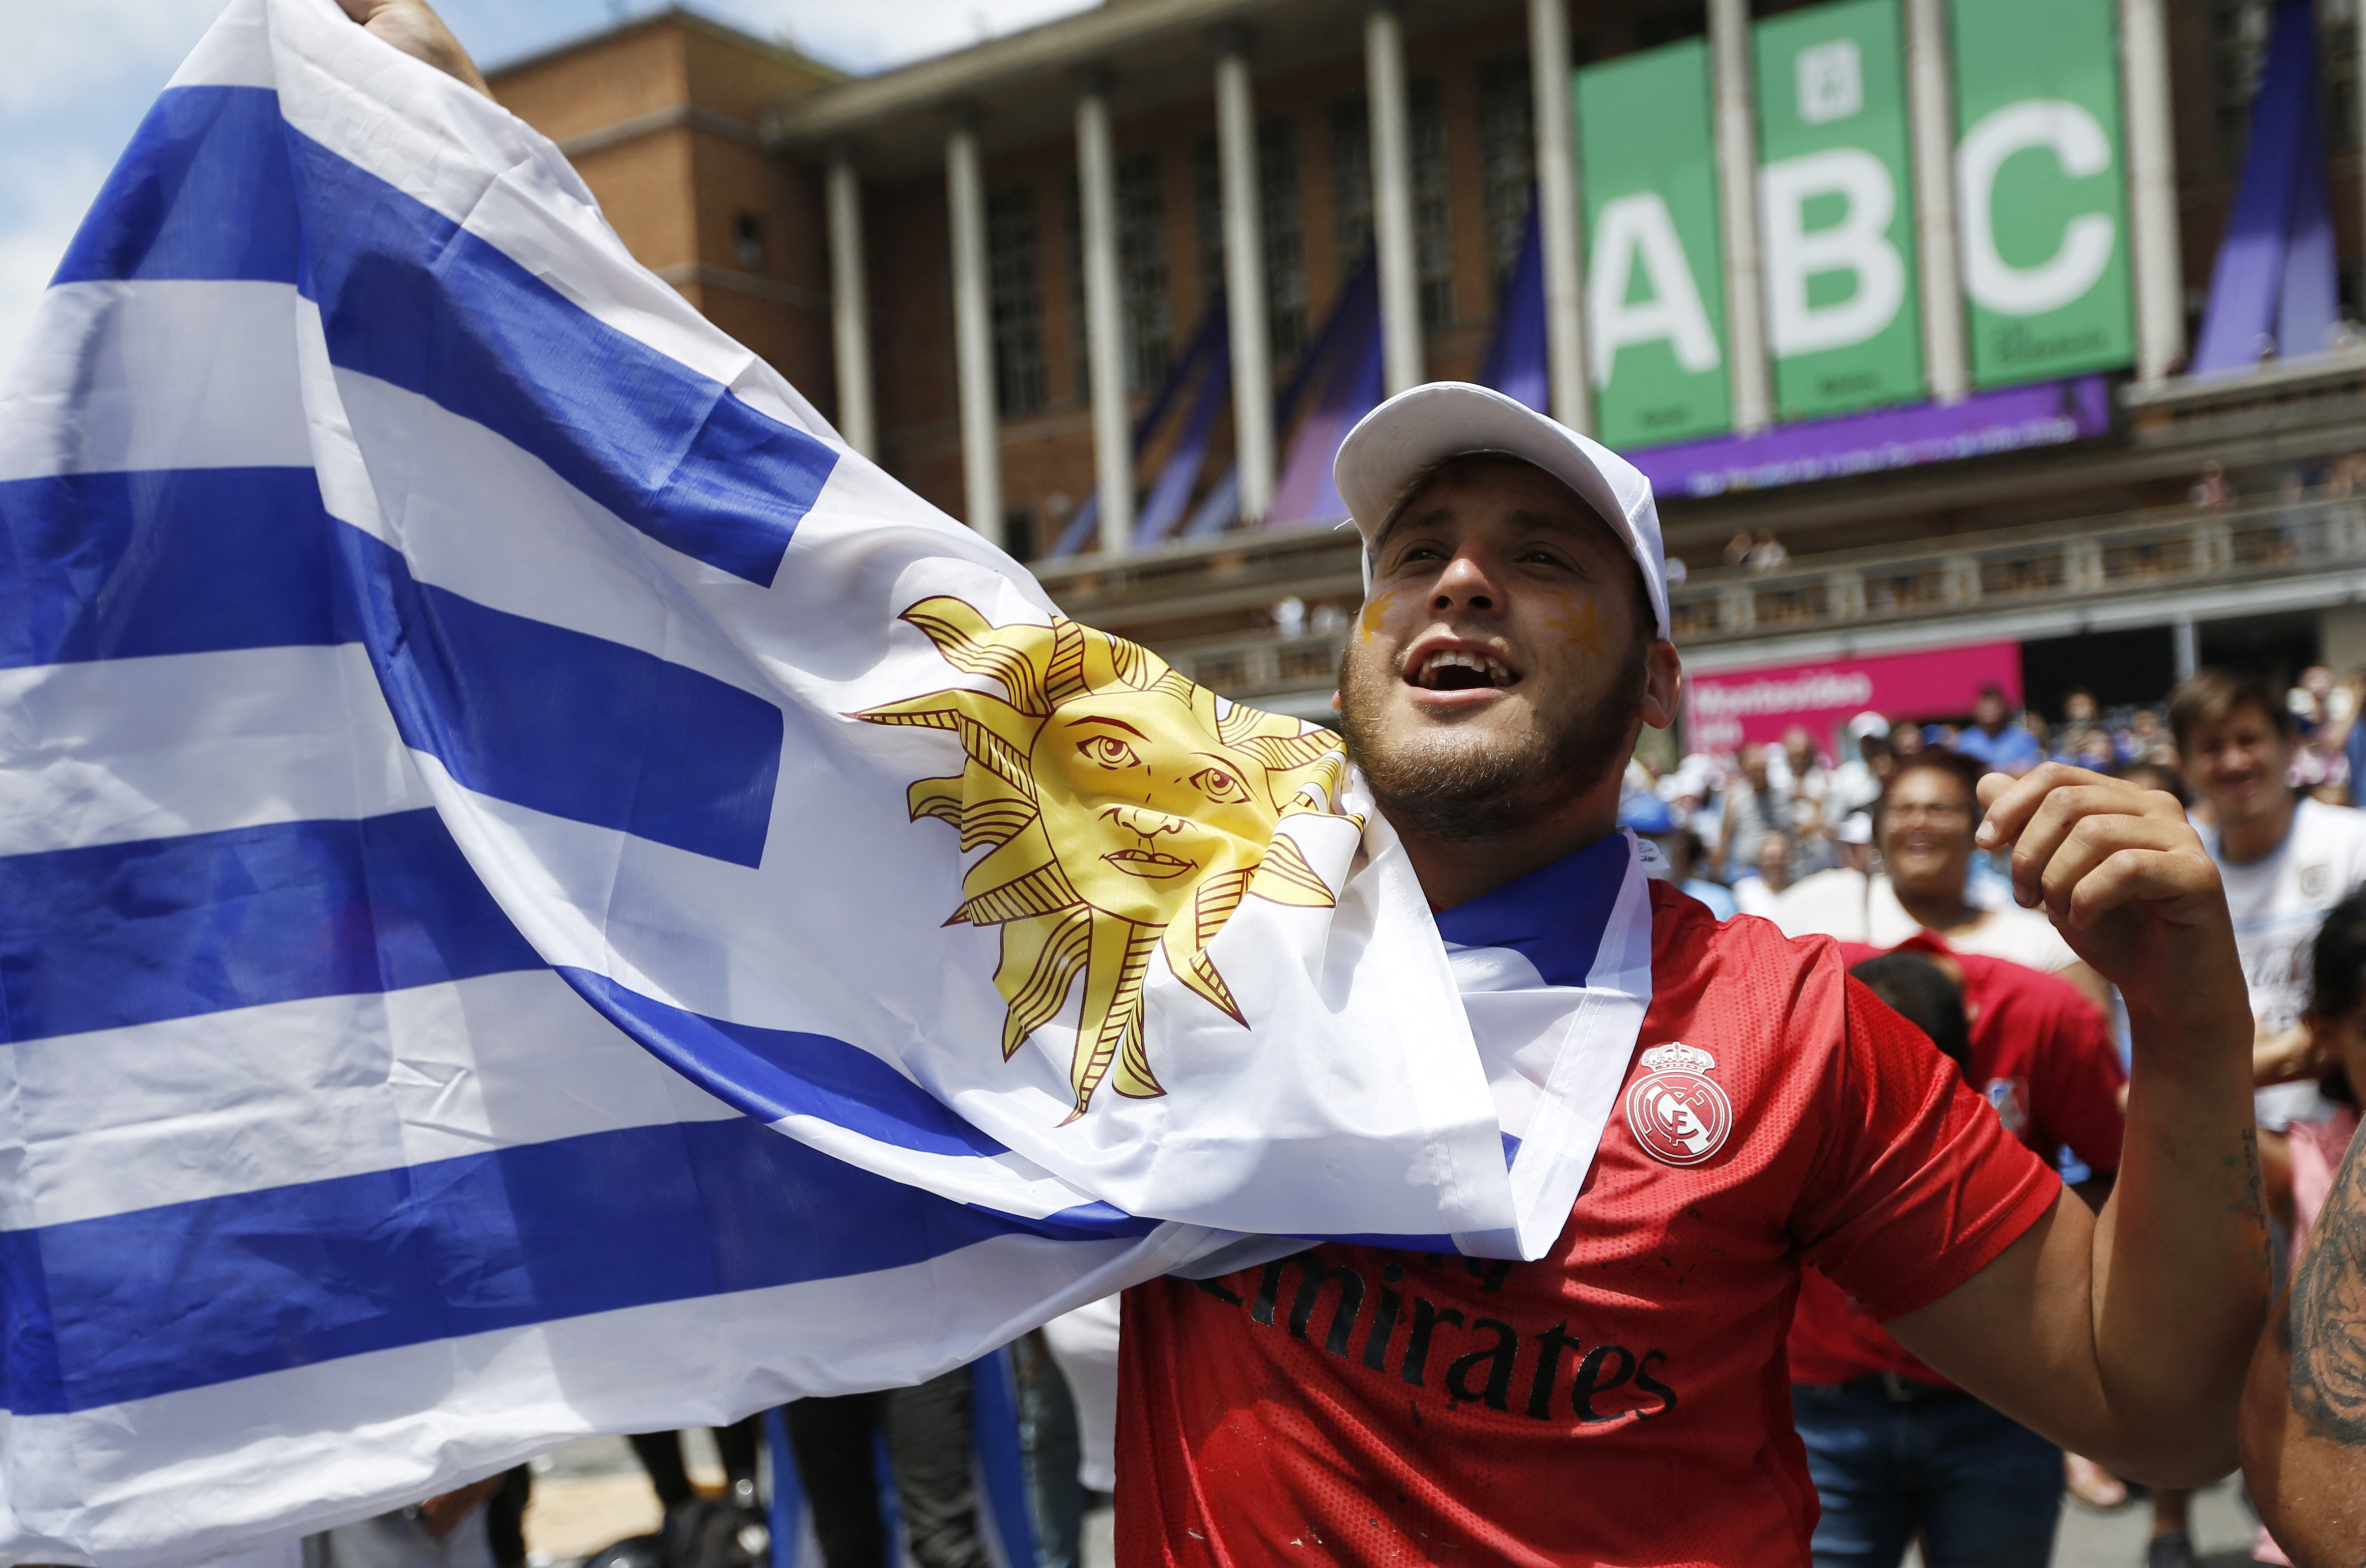 Un fanático uruguayo durante el Mundial, fotografiado en Montevideo, Uruguay (REUTERS/Andres Cuenca Olaondo)